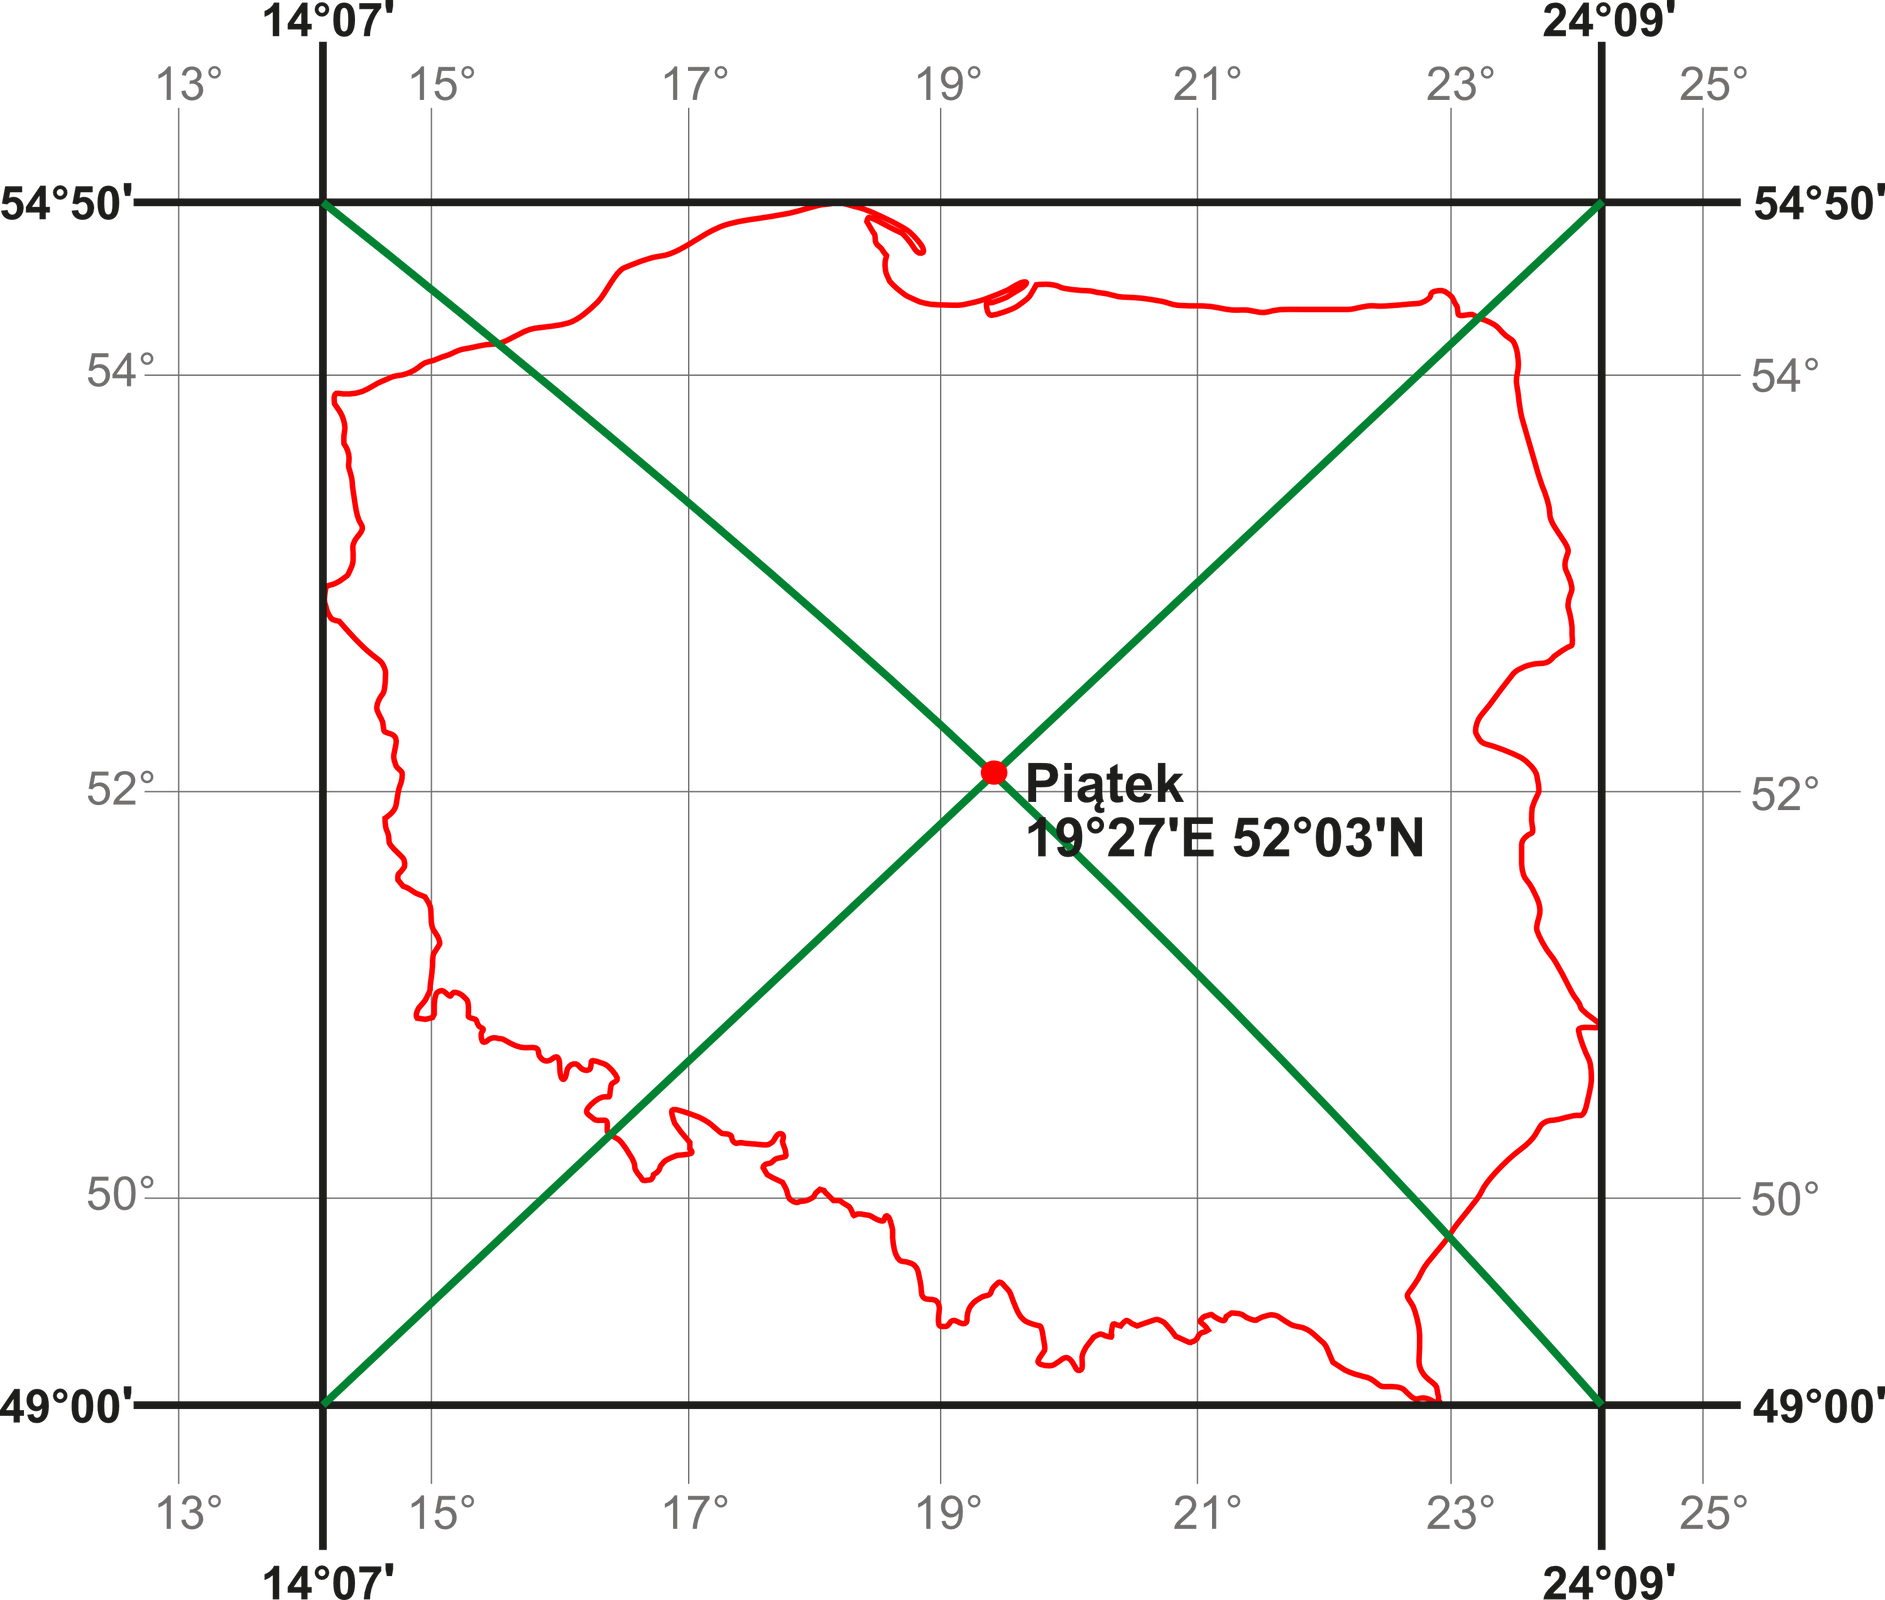 Na ilustracji mapa konturowa Polski, liniami oznaczono skrajne południki i równoleżniki, a z wierzchołków tak utworzonego czworokąta poprowadzono linie, które w punkcie przecięcia wyznaczają geometryczny Polski.